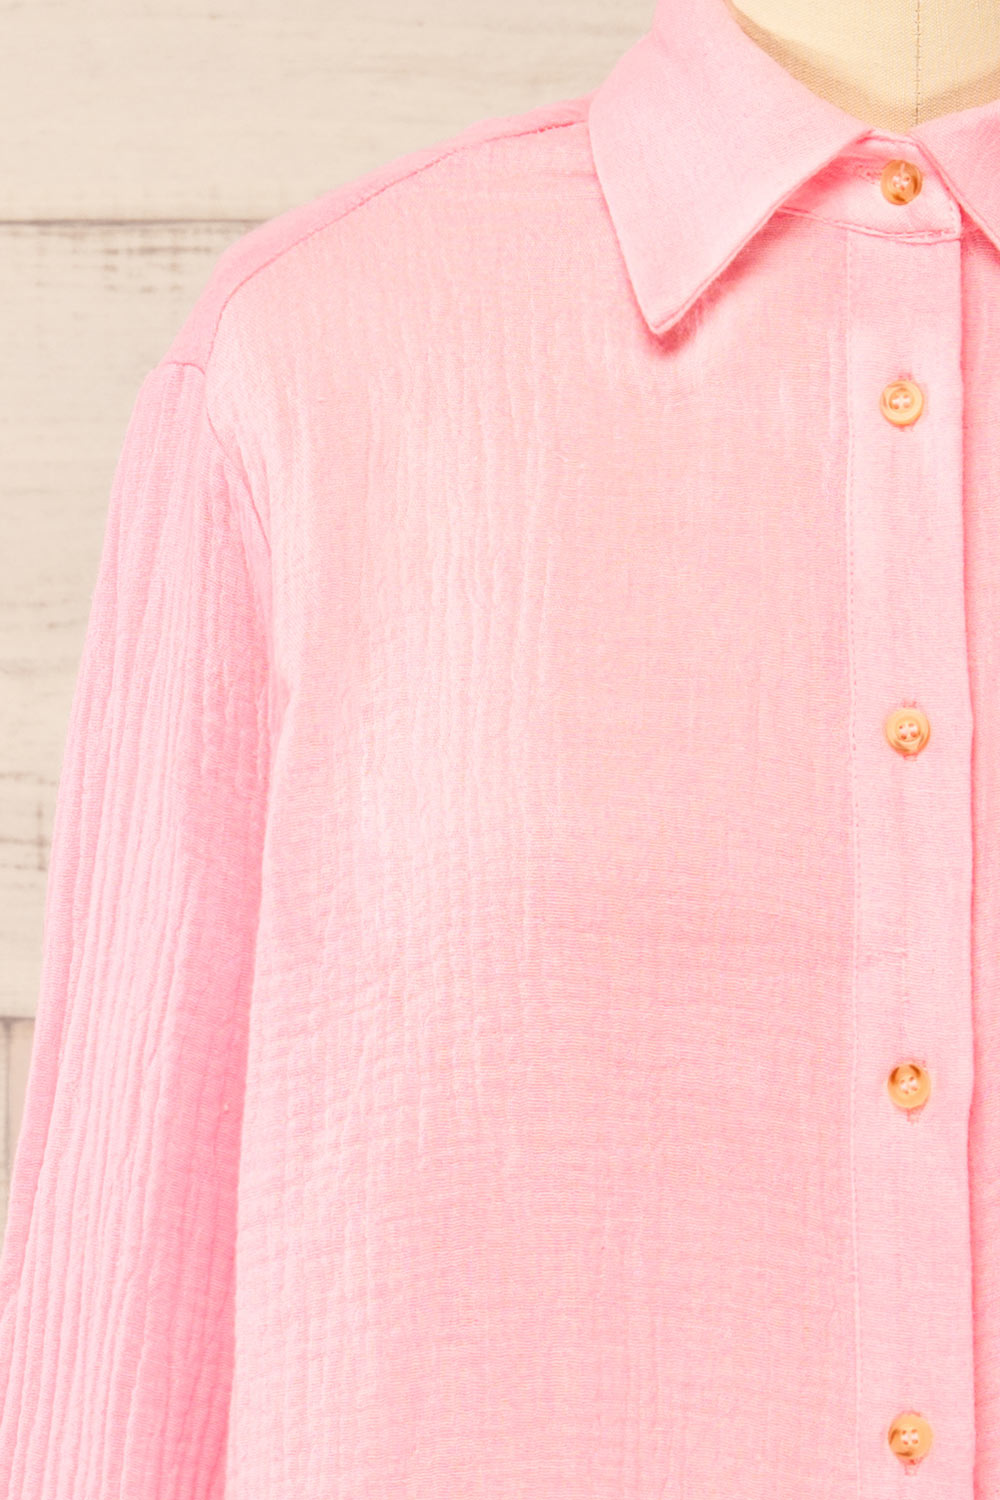 Remington Pink Long Translucent Shirt | La petite garçonne front